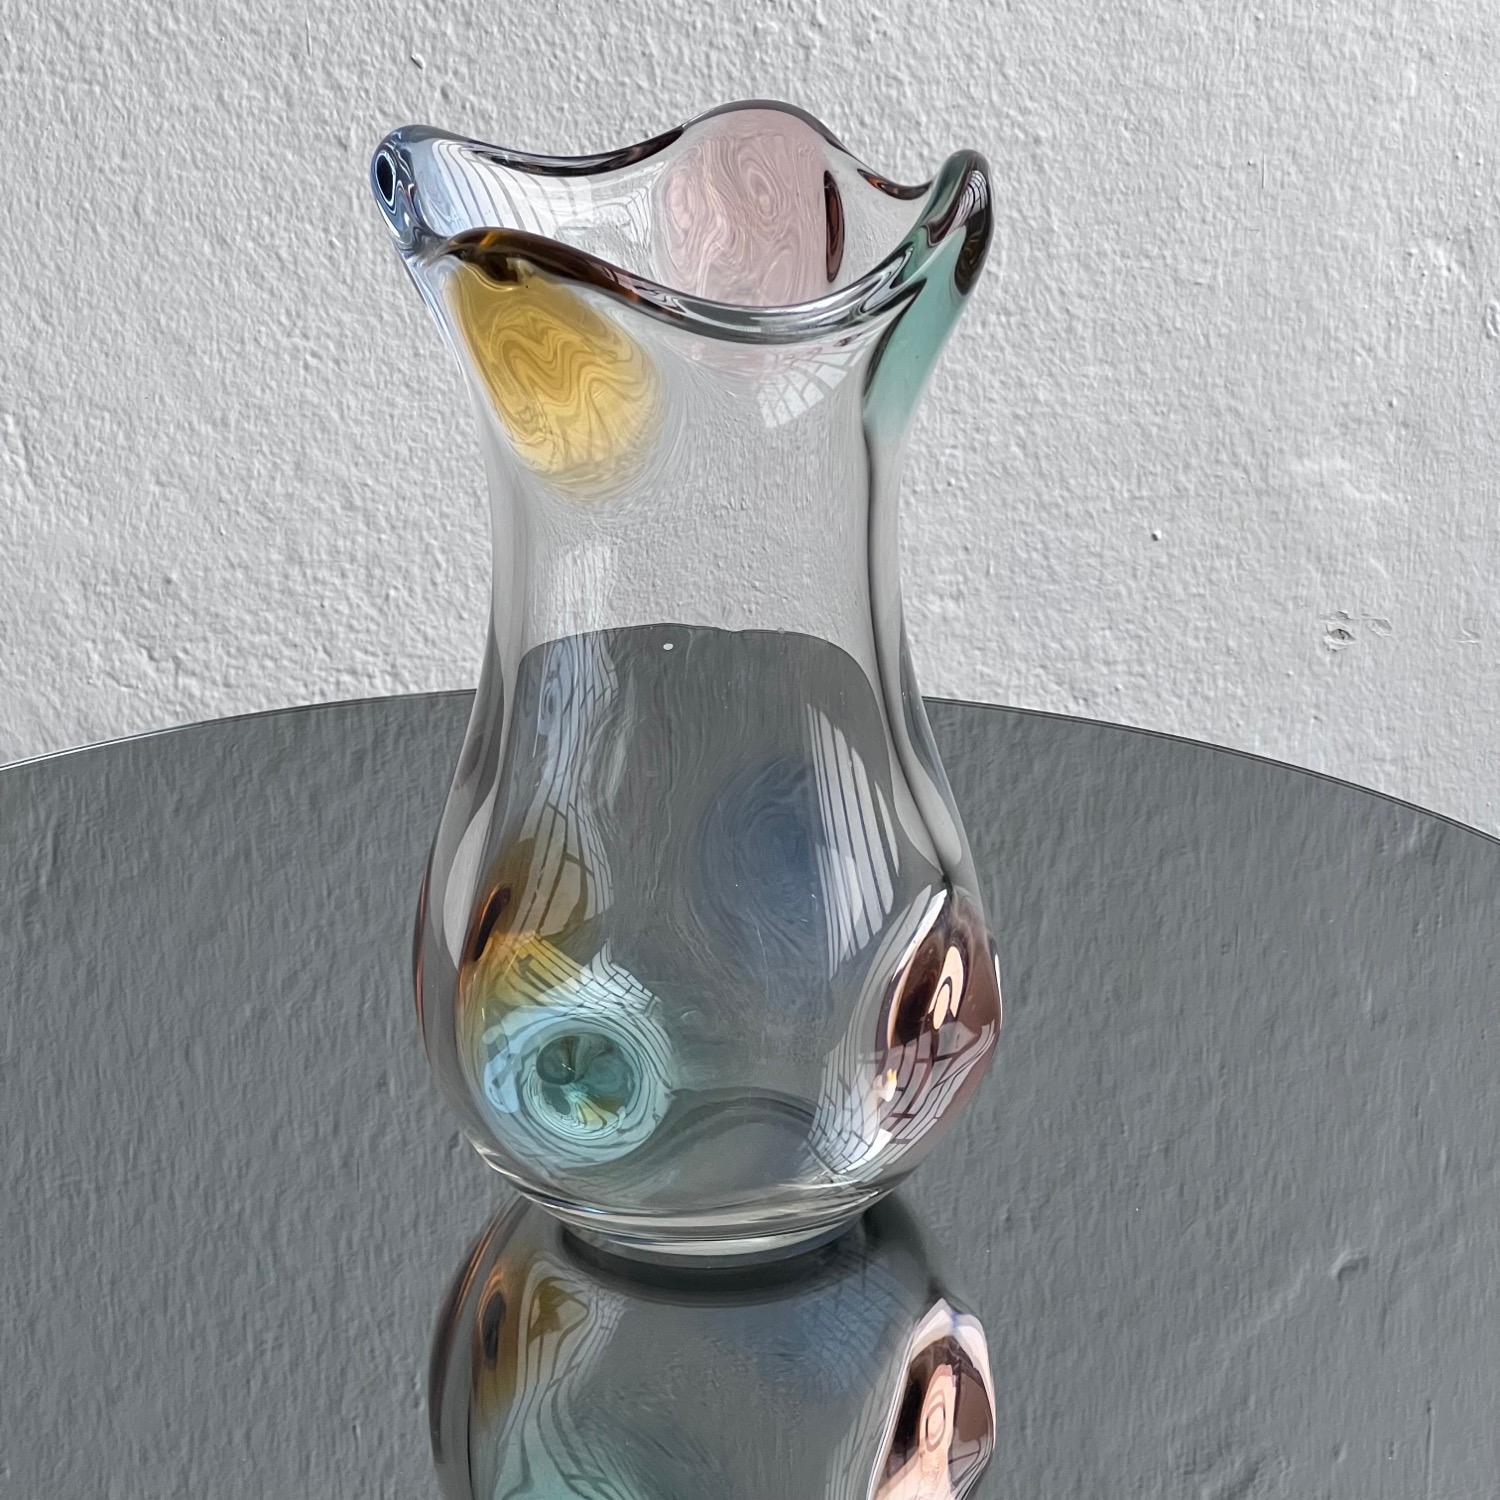 Issu de la sélection de verre vintage de collection de Spinzi Milano, ce grand vase des années 1960 est un merveilleux exemple de design italien.

Fluide, élégante et colorée, d'une beauté presque sculpturale, elle est réalisée selon la technique